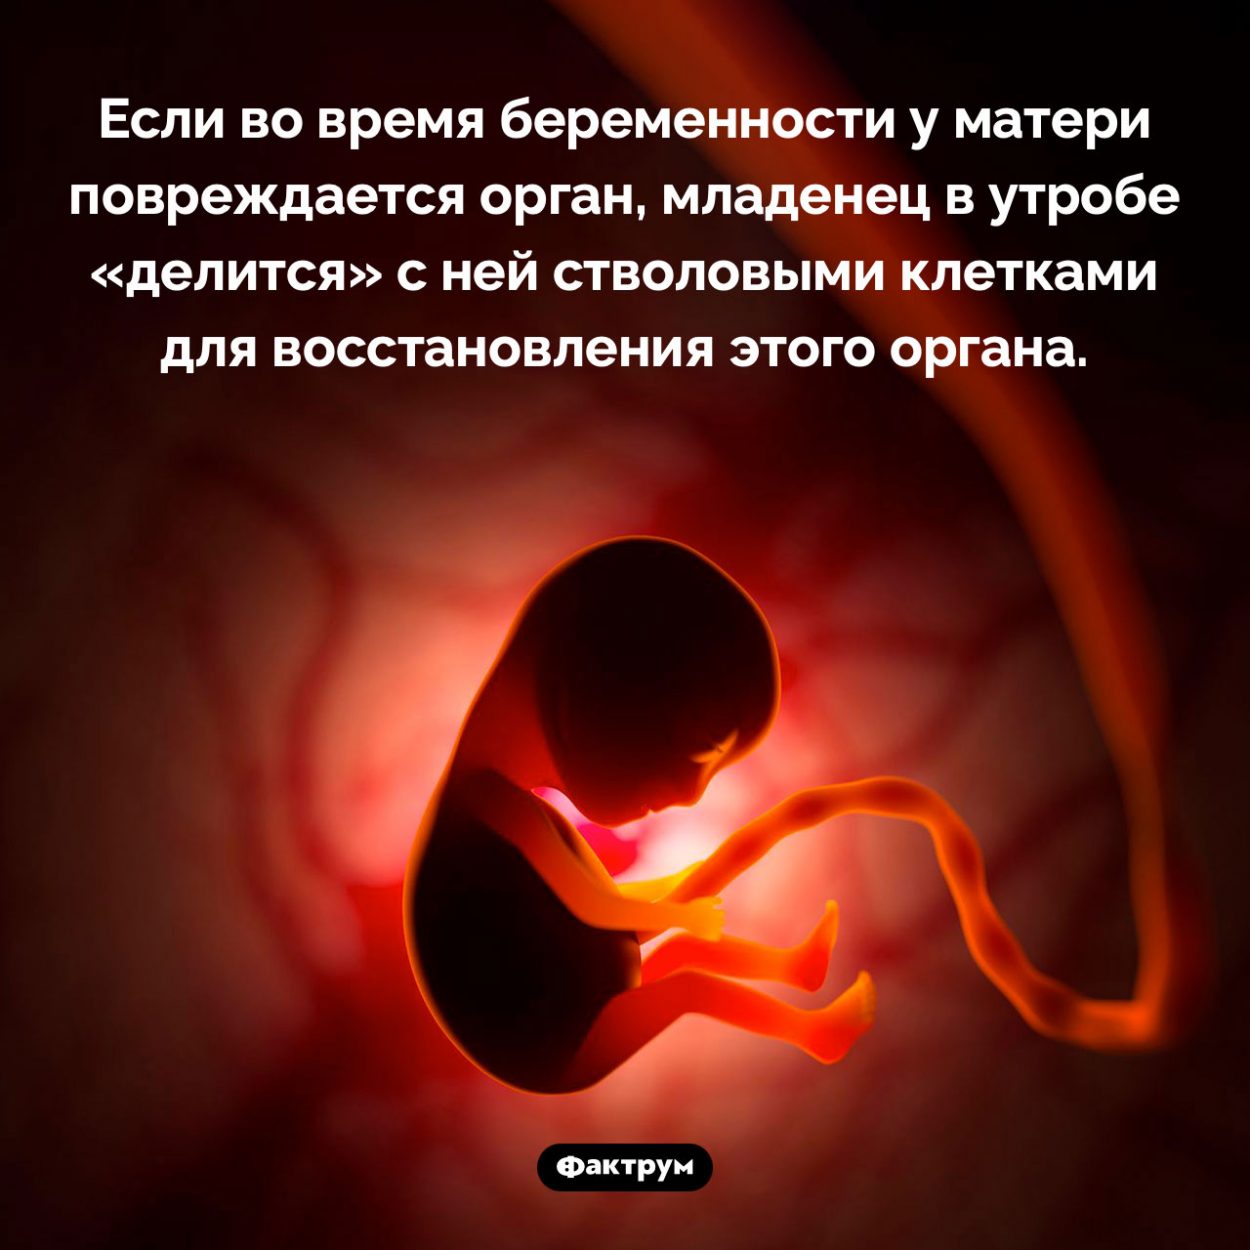 Как младенец в утробе лечит мать. Если во время беременности у матери повреждается орган, младенец в утробе «делится» с ней стволовыми клетками для восстановления этого органа.